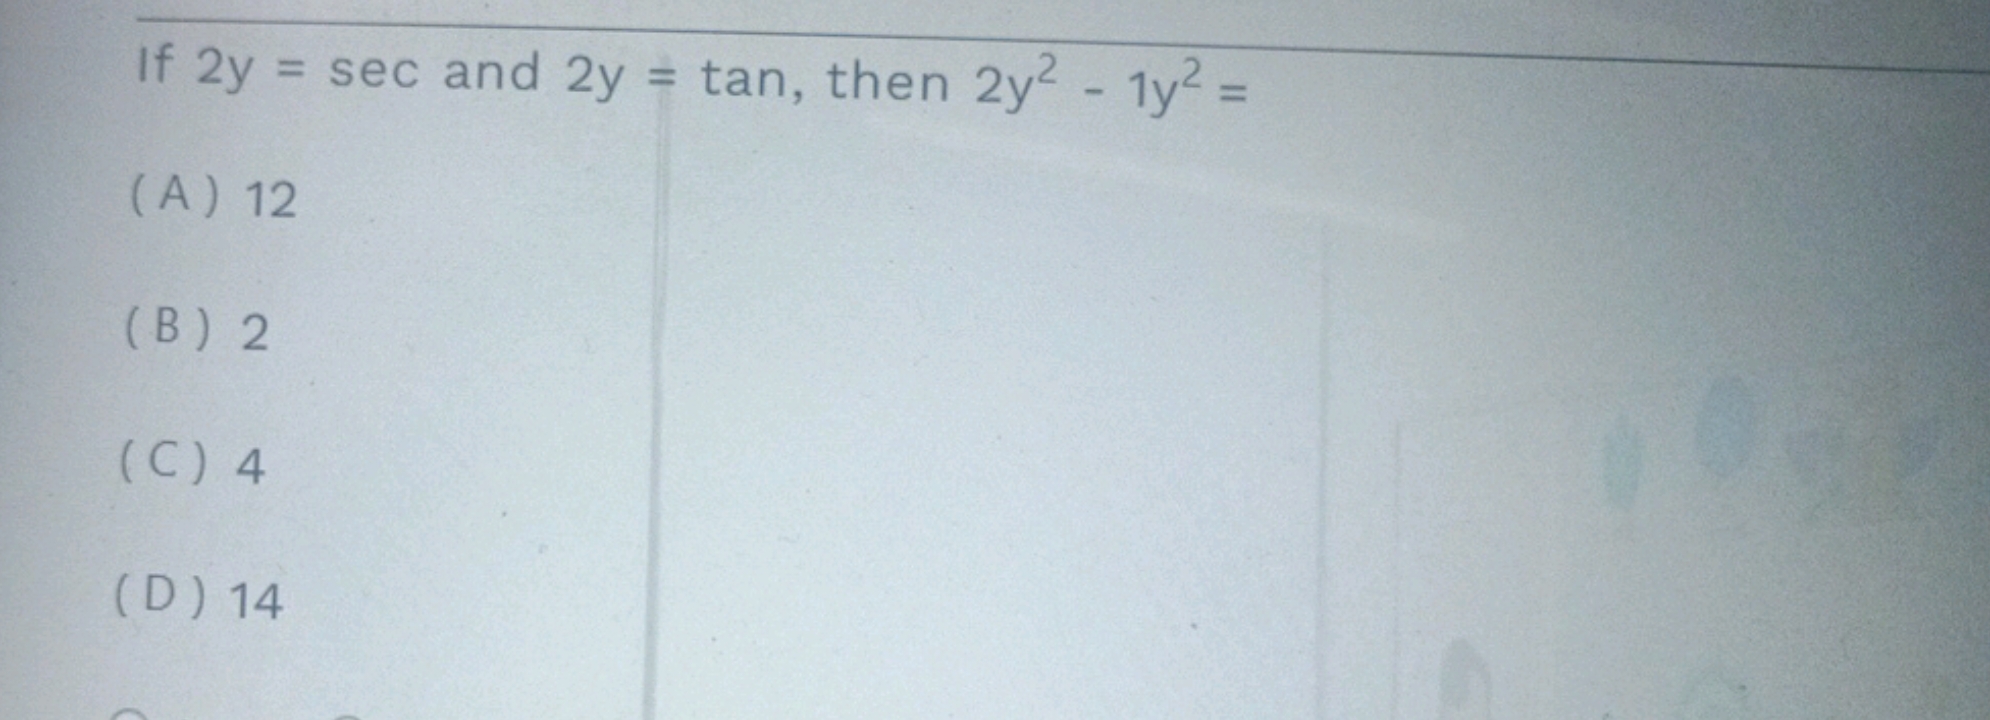 If 2y=sec and 2y=tan, then 2y2−1y2=